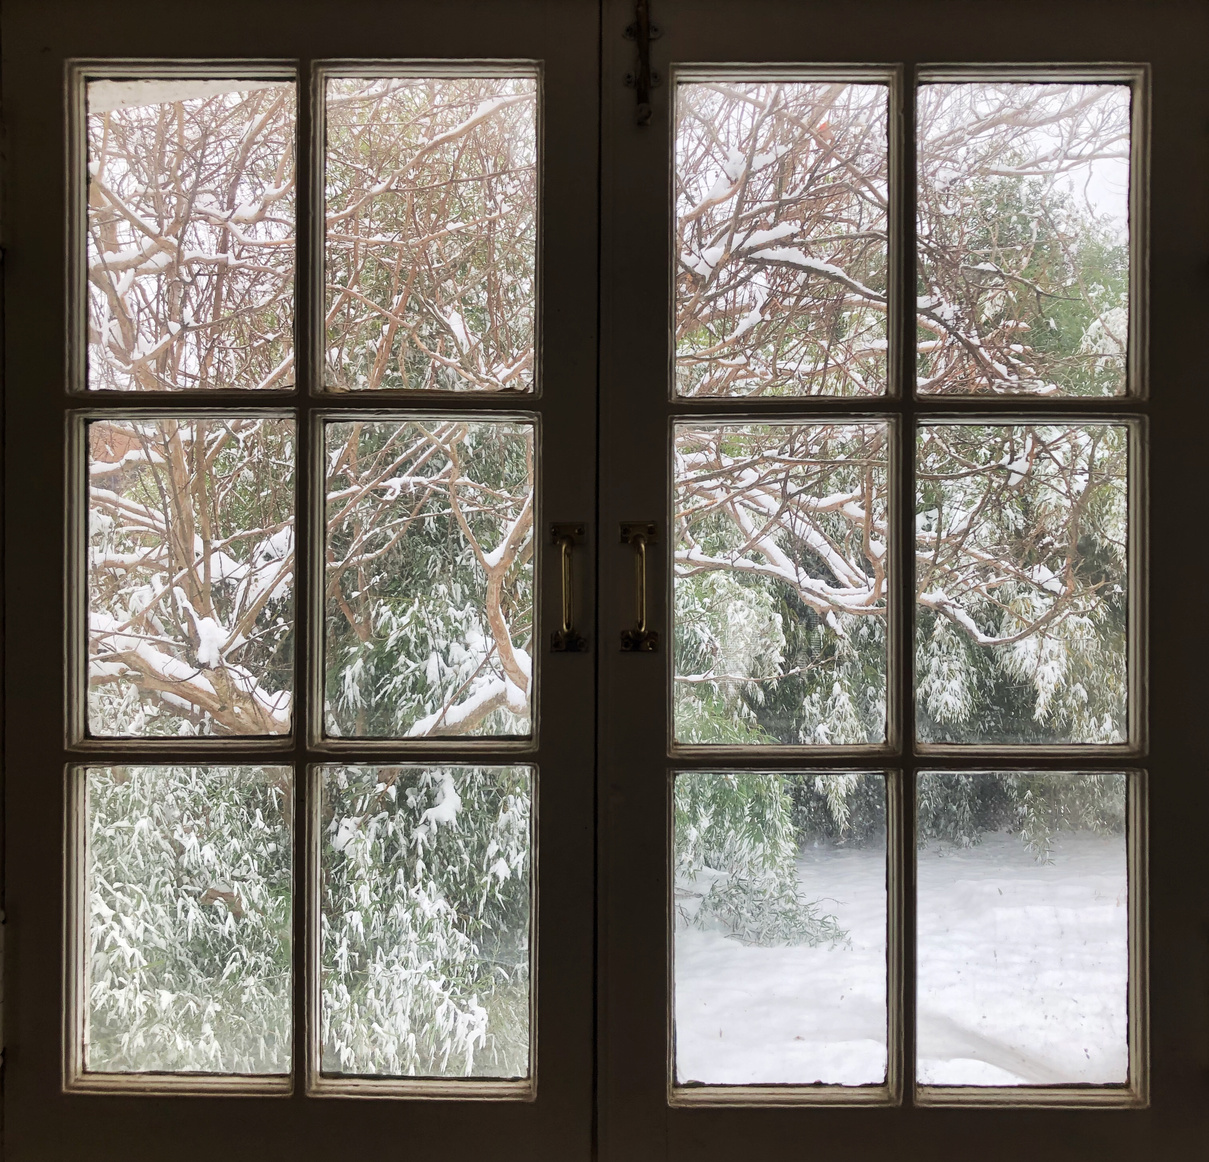 Snowy day window